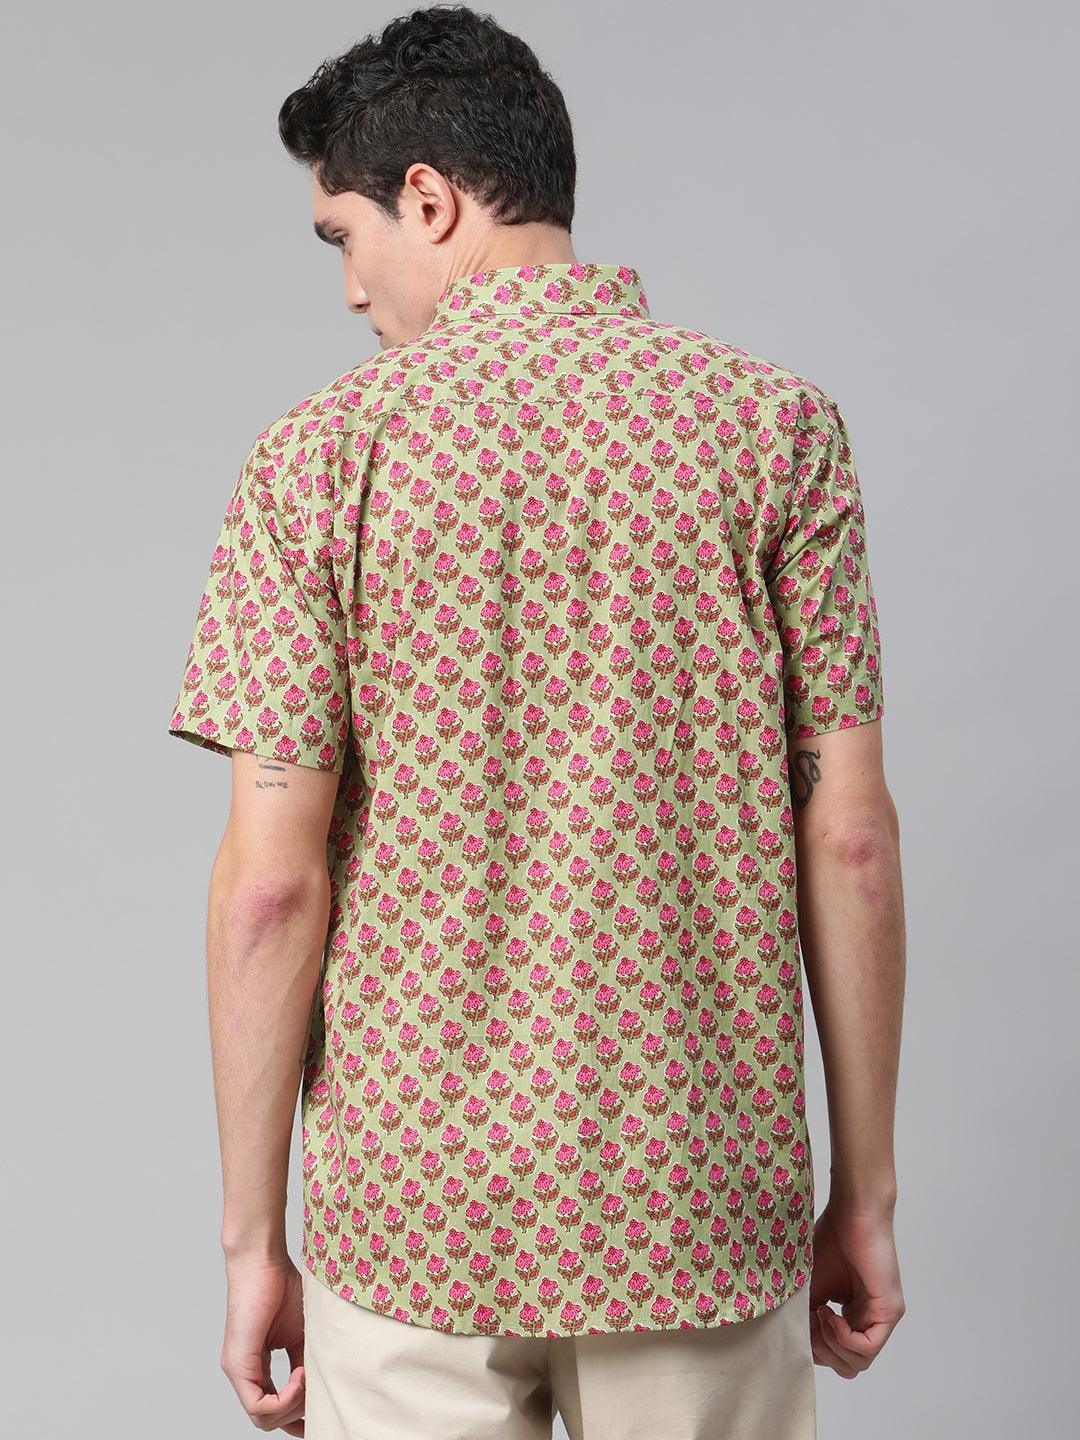 Millennial Men Green  & Pink Cotton  Half Sleeve Shirt for Men-MMH0180 - divenaworld.com